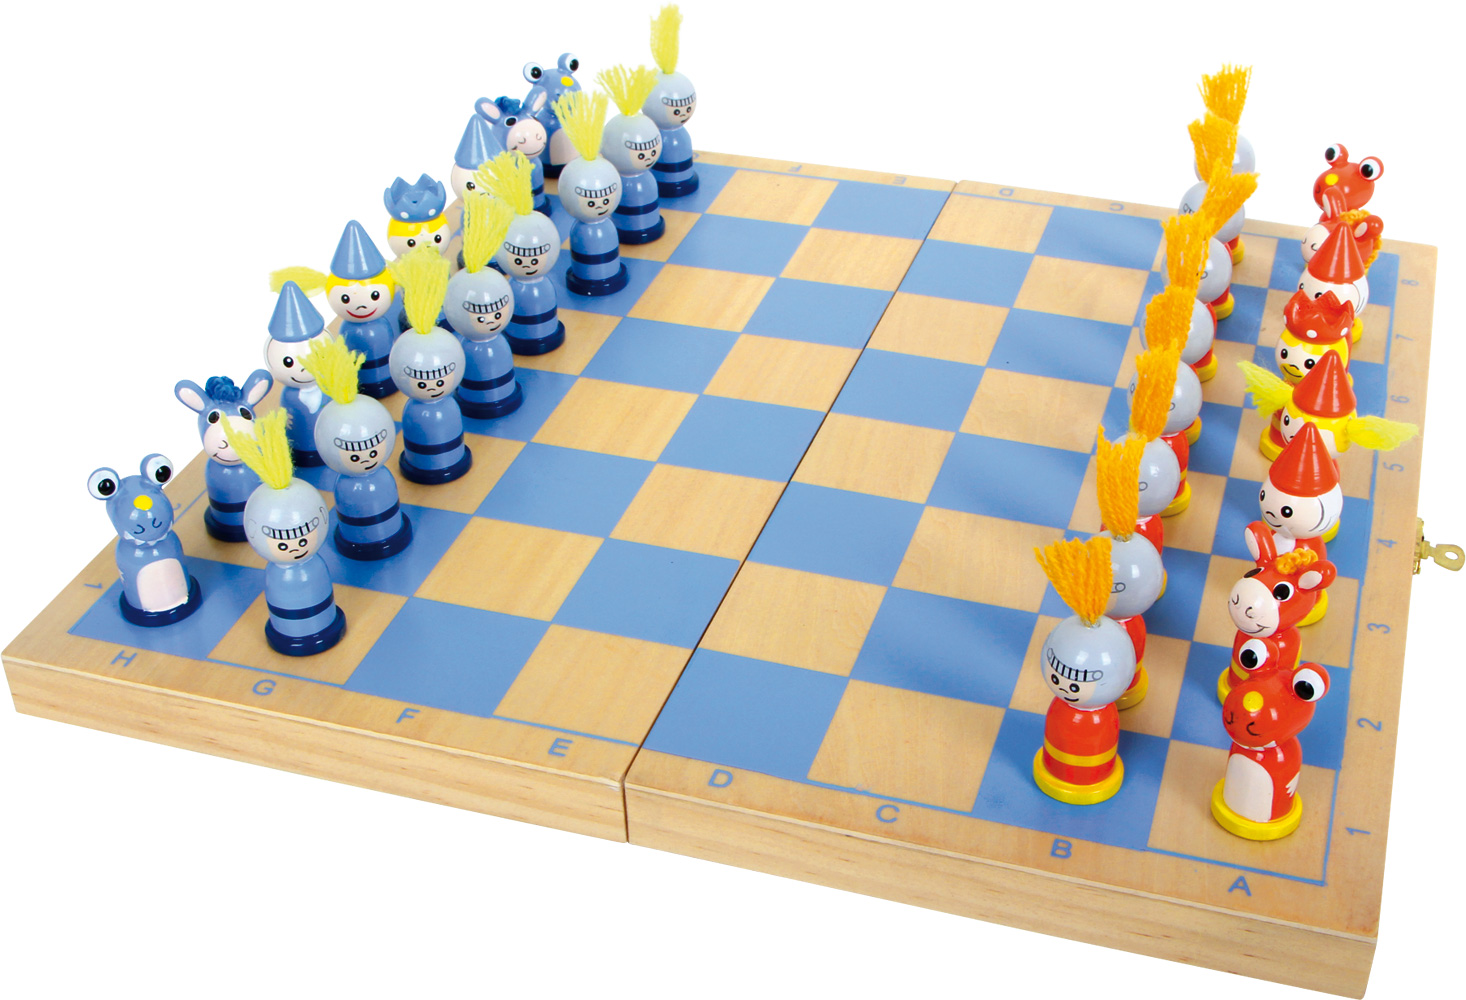 Spiele und Spielzeug: Schach - Spiele und Spielzeug - Gesellschaft